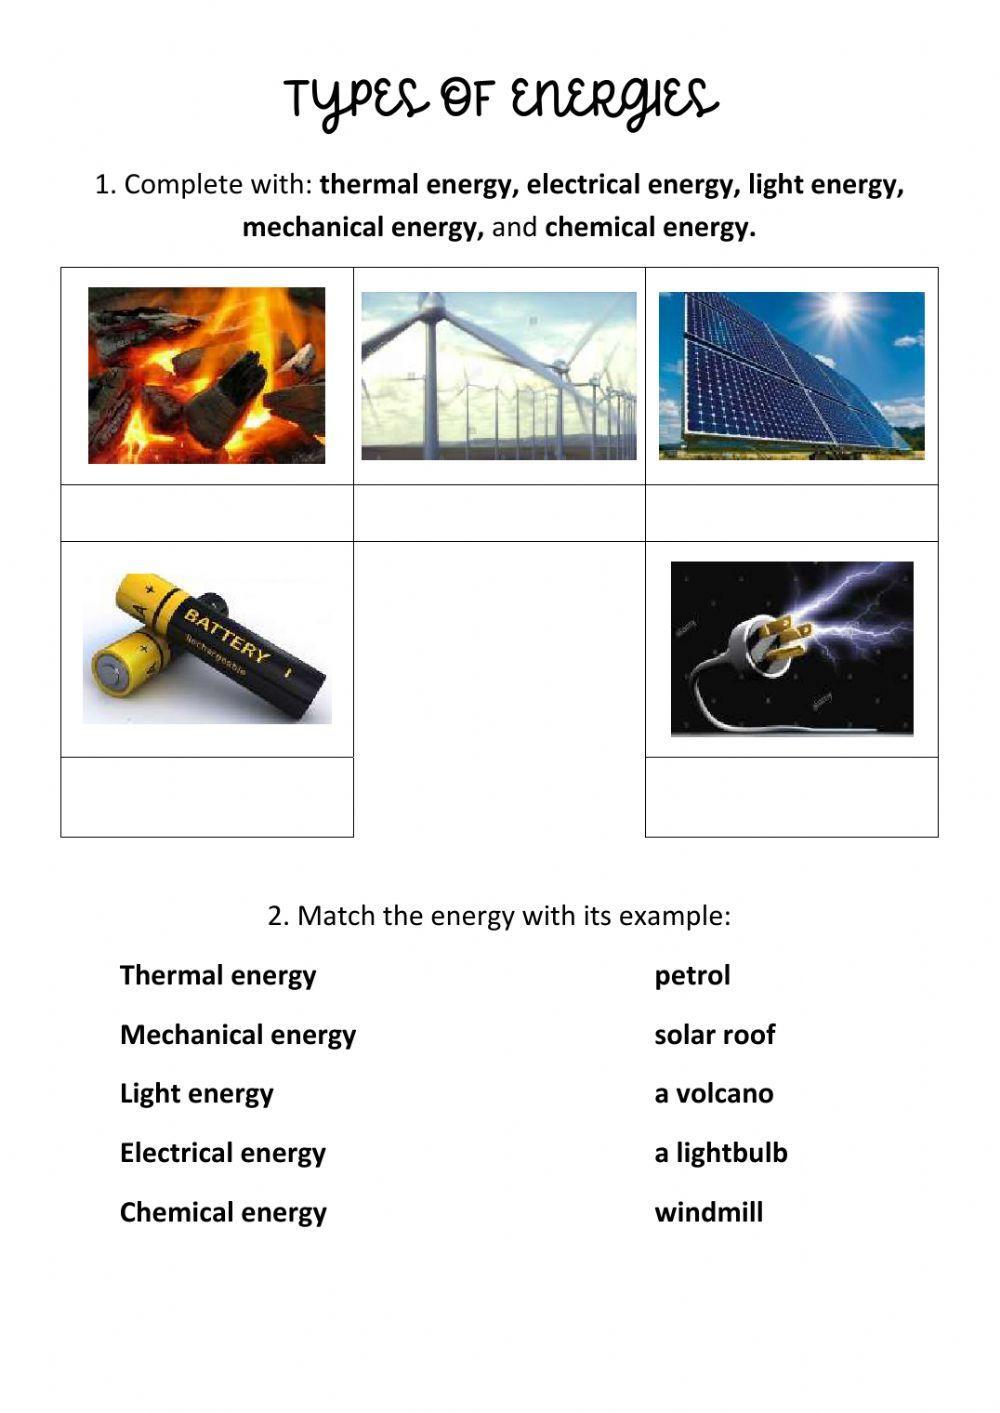 Types of energies